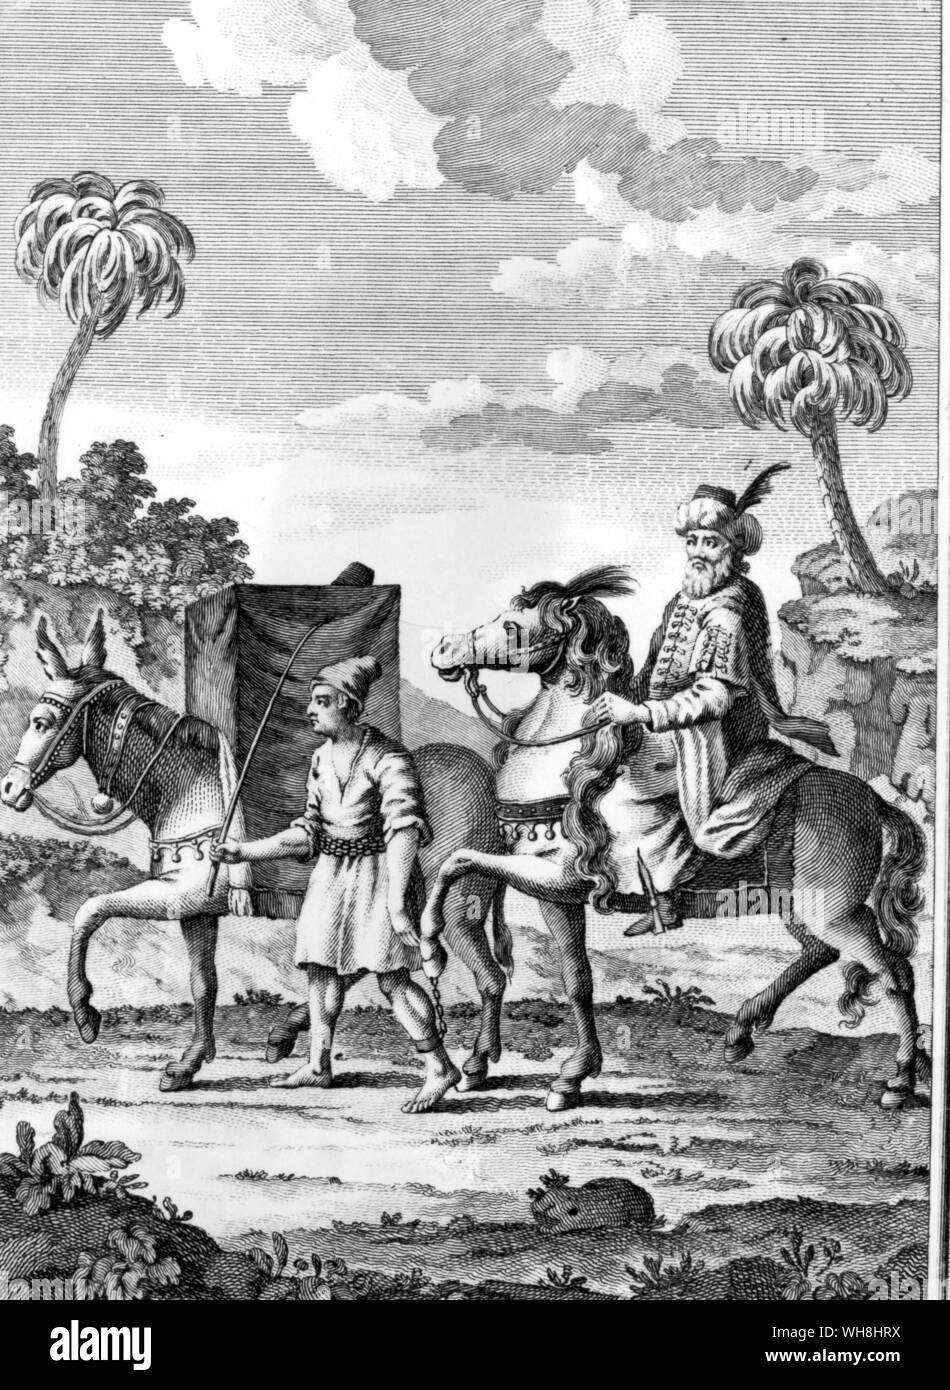 Brunnen - - Reiter Barbary mit seiner Frau Reiten in einem Zelt versteckt. Die African Adventure - eine Geschichte von Afrikas Entdecker von Timothy Severin, Seite 80. Stockfoto